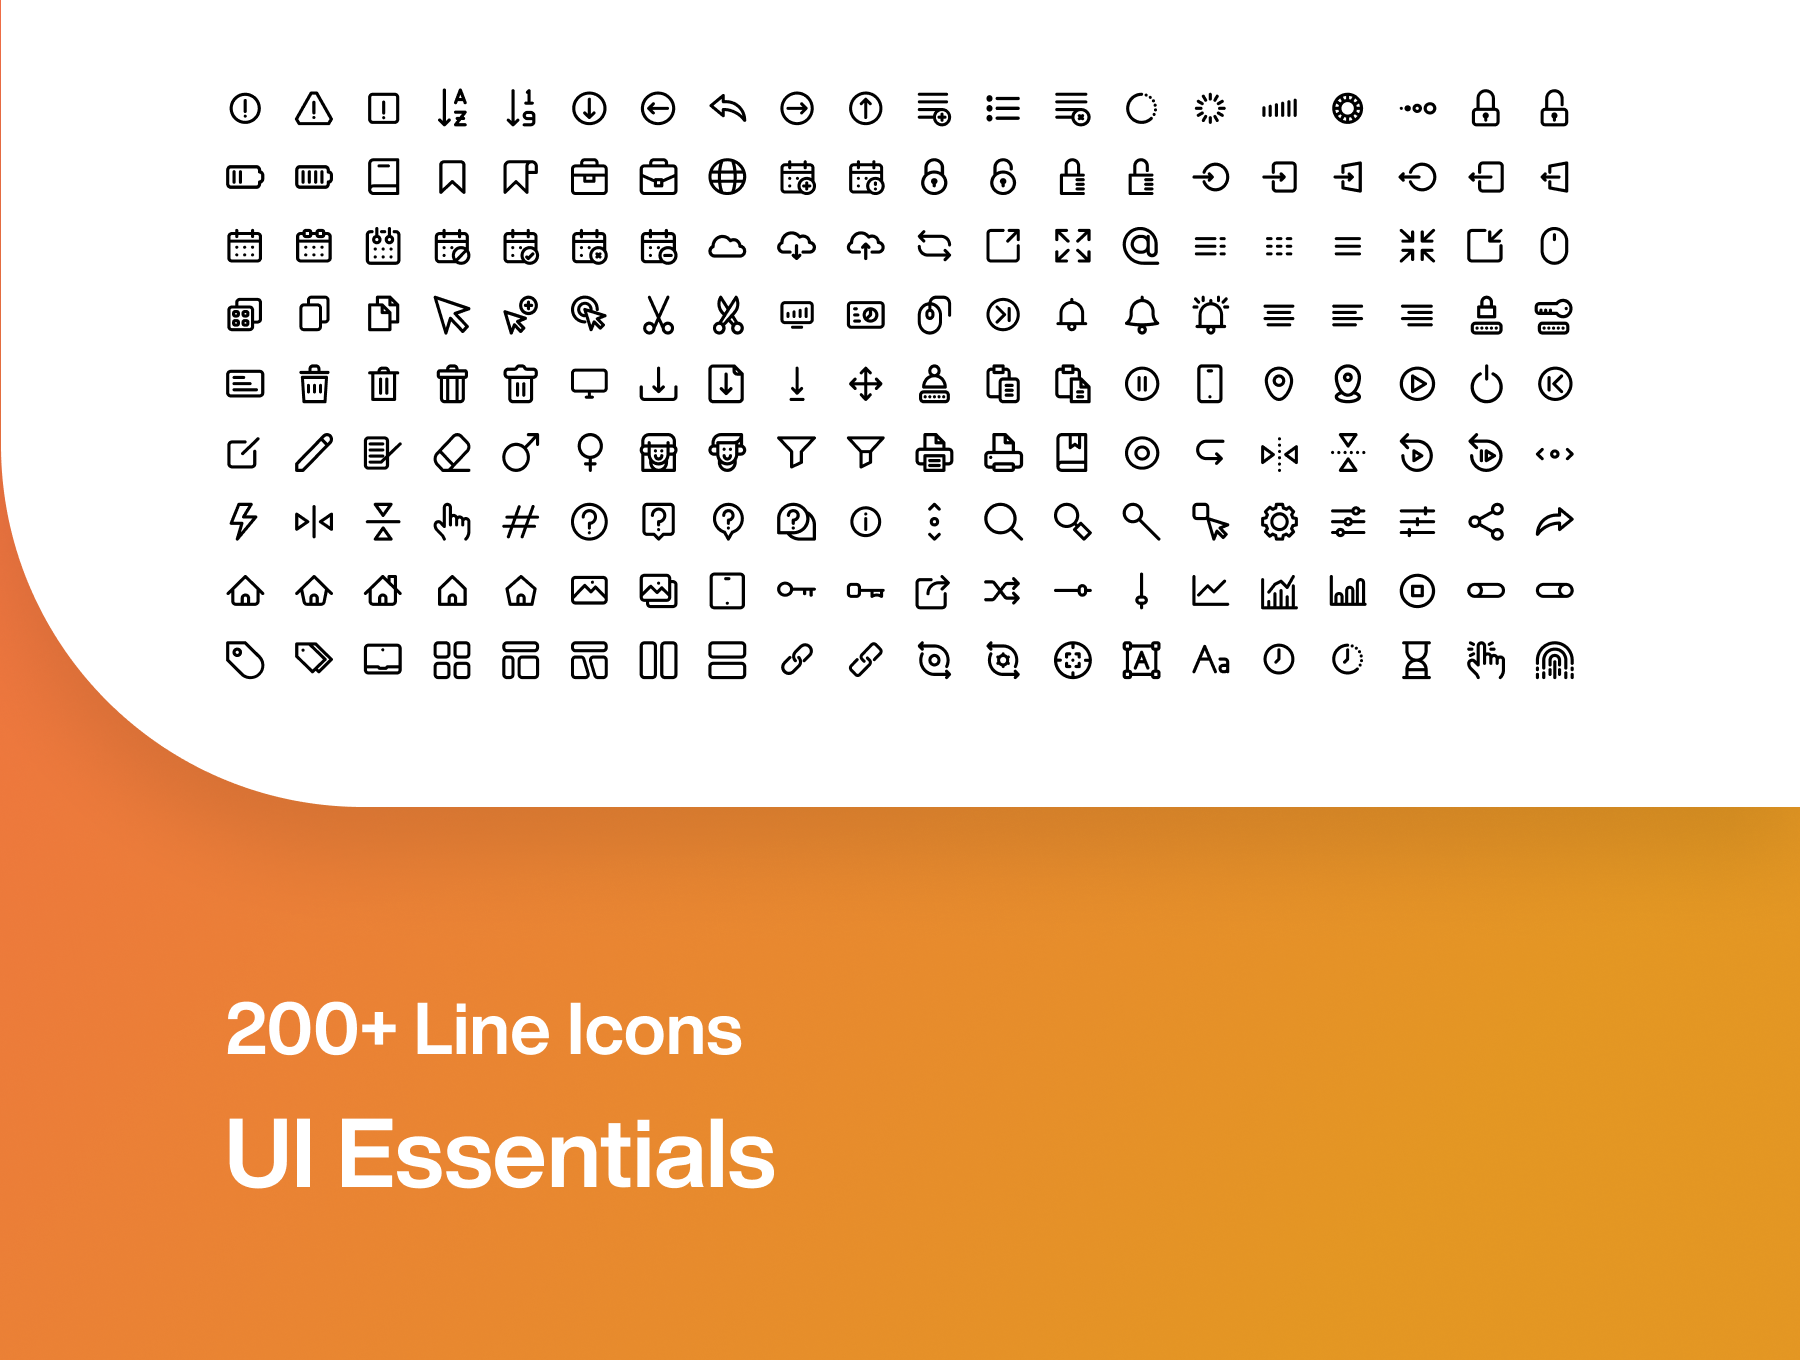 200+平面设计常用icon图标合集 ui-essentials-by-madlabstudio-酷社 (KUSHEW)